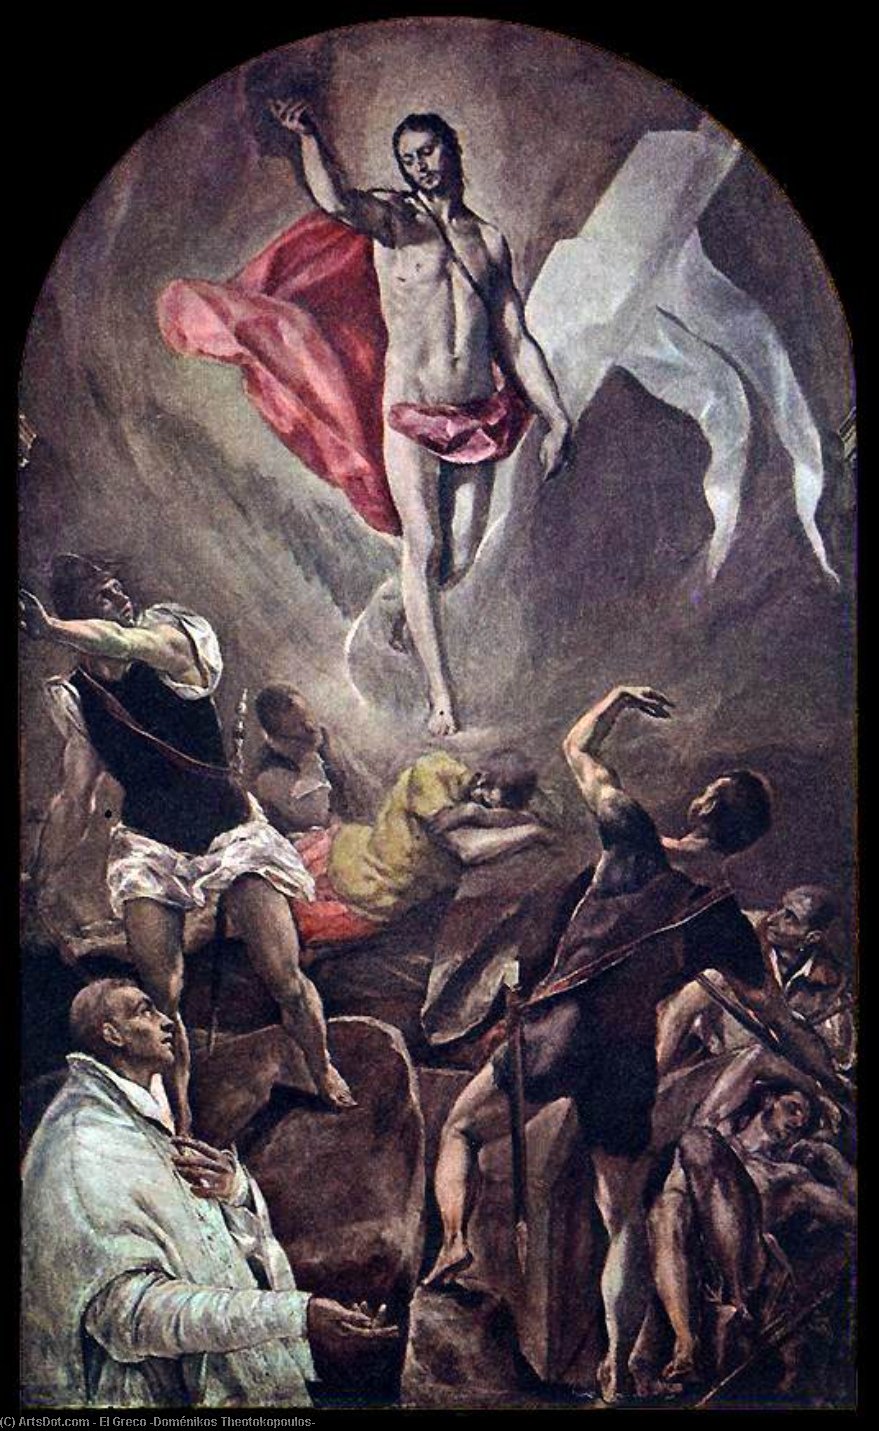 WikiOO.org - Encyclopedia of Fine Arts - Malba, Artwork El Greco (Doménikos Theotokopoulos) - The Resurrection